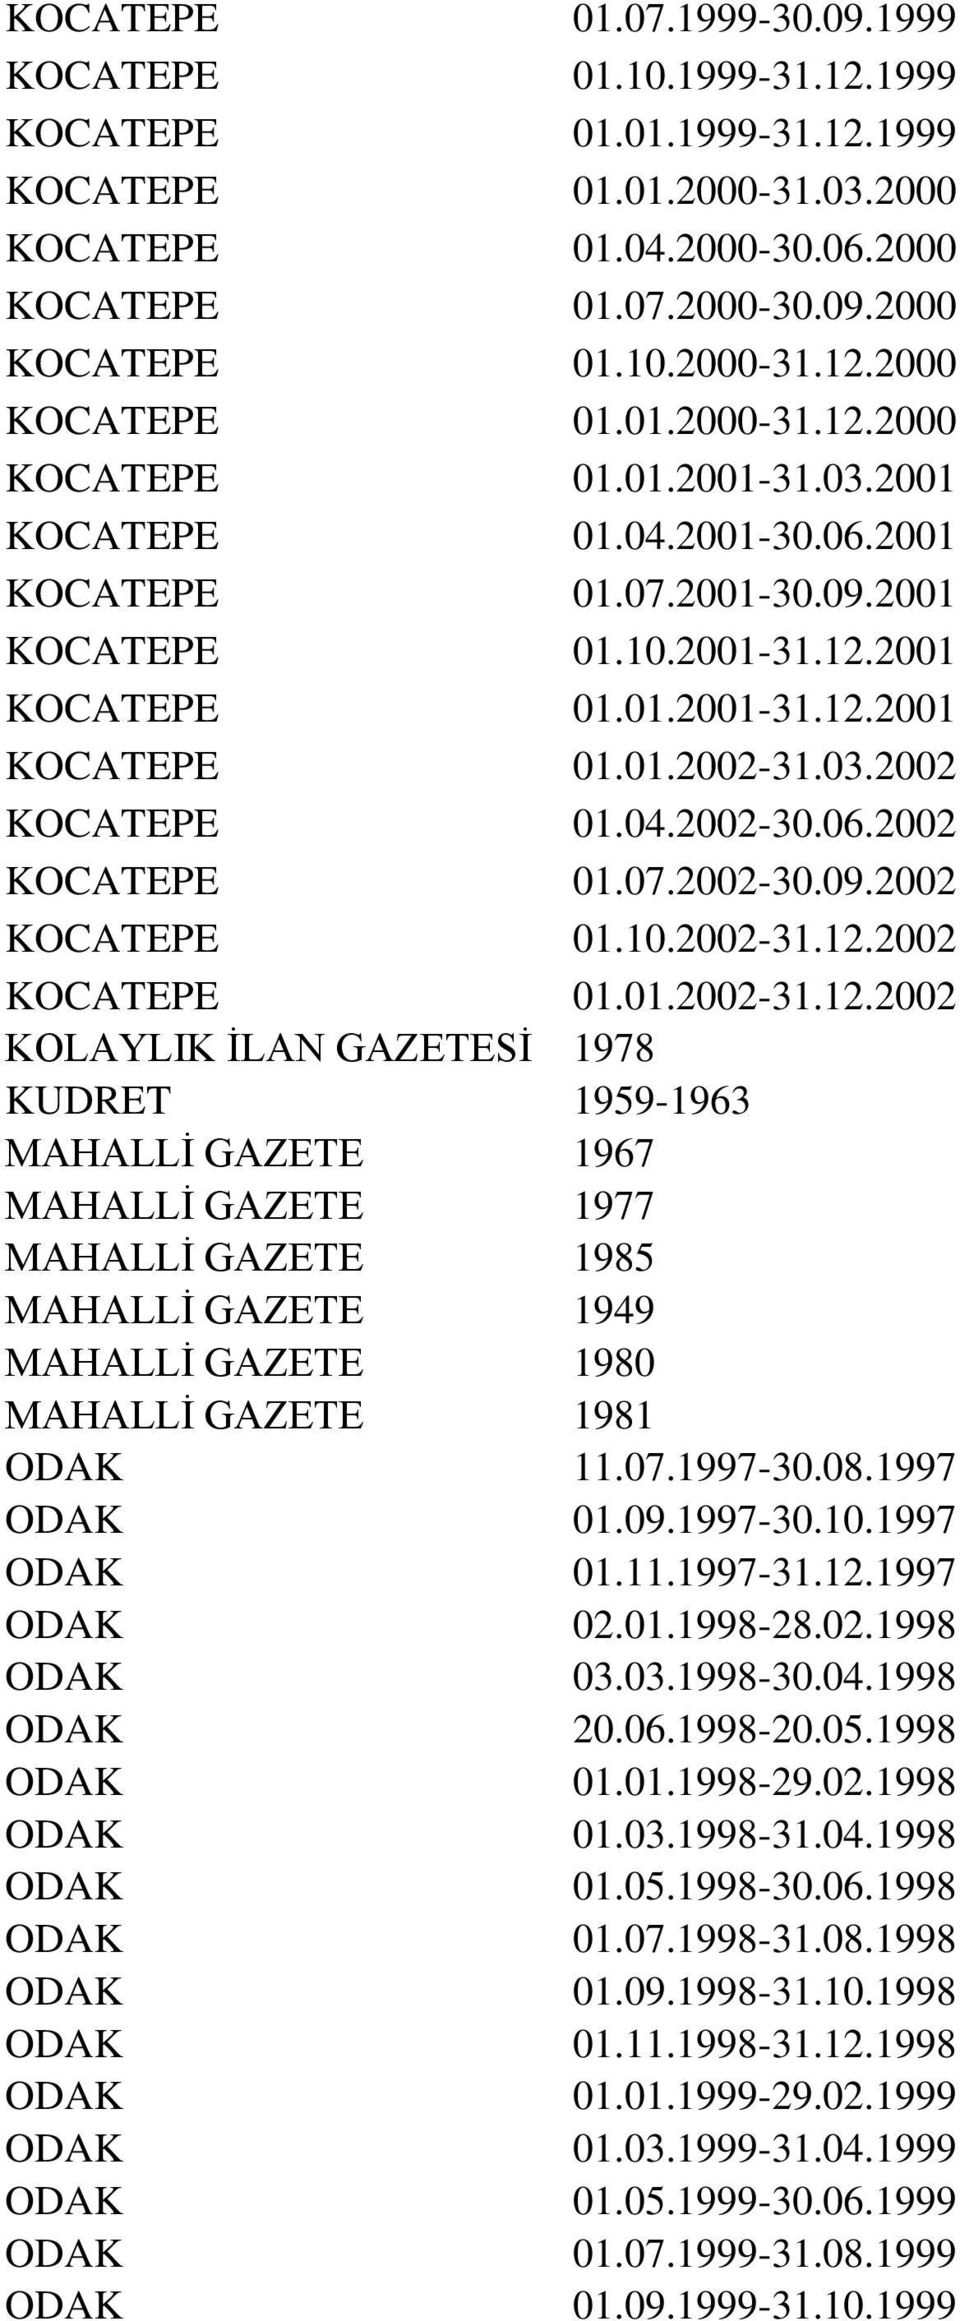 2001 KOCATEPE 01.01.2001-31.12.